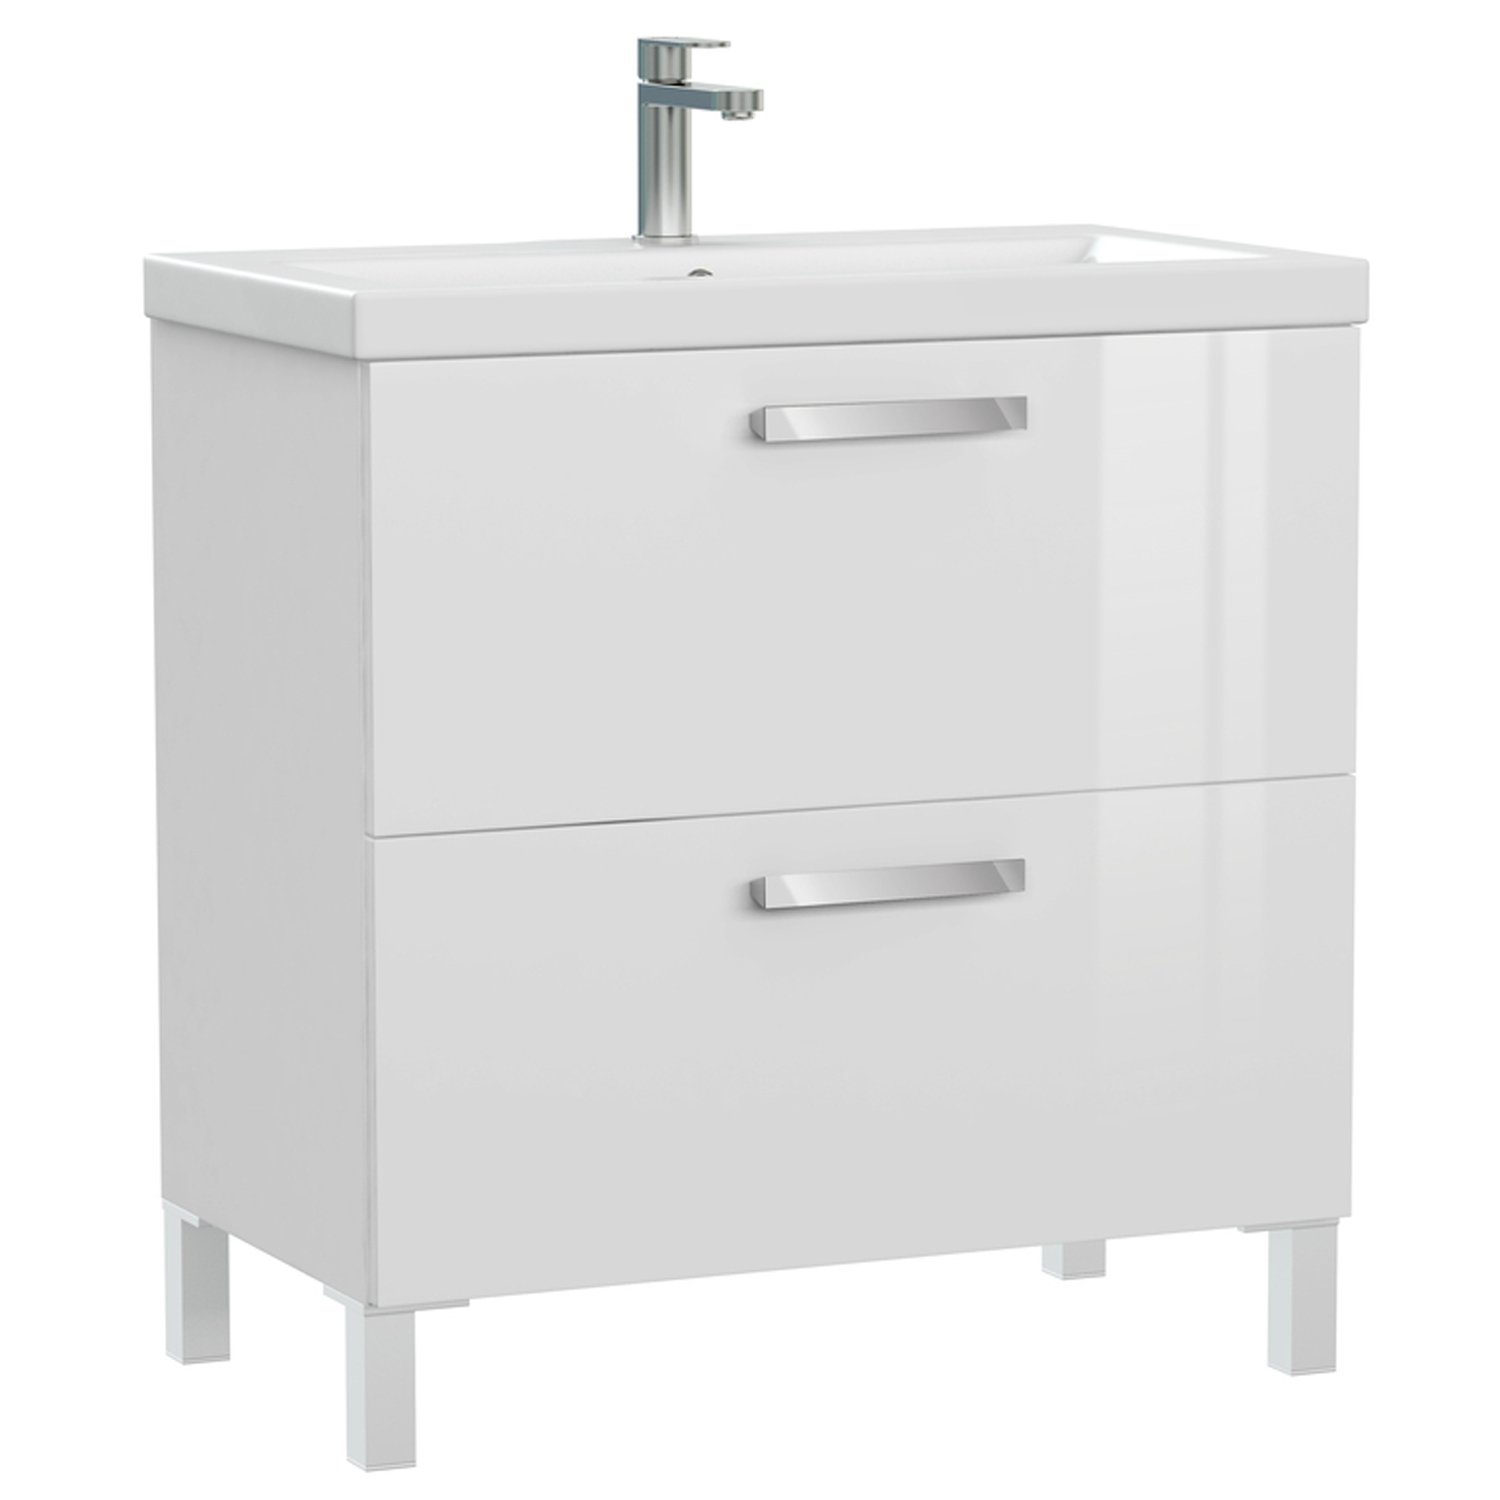 Мебель для ванной Cersanit Melar 80, с раковиной и смесителем, цвет белый